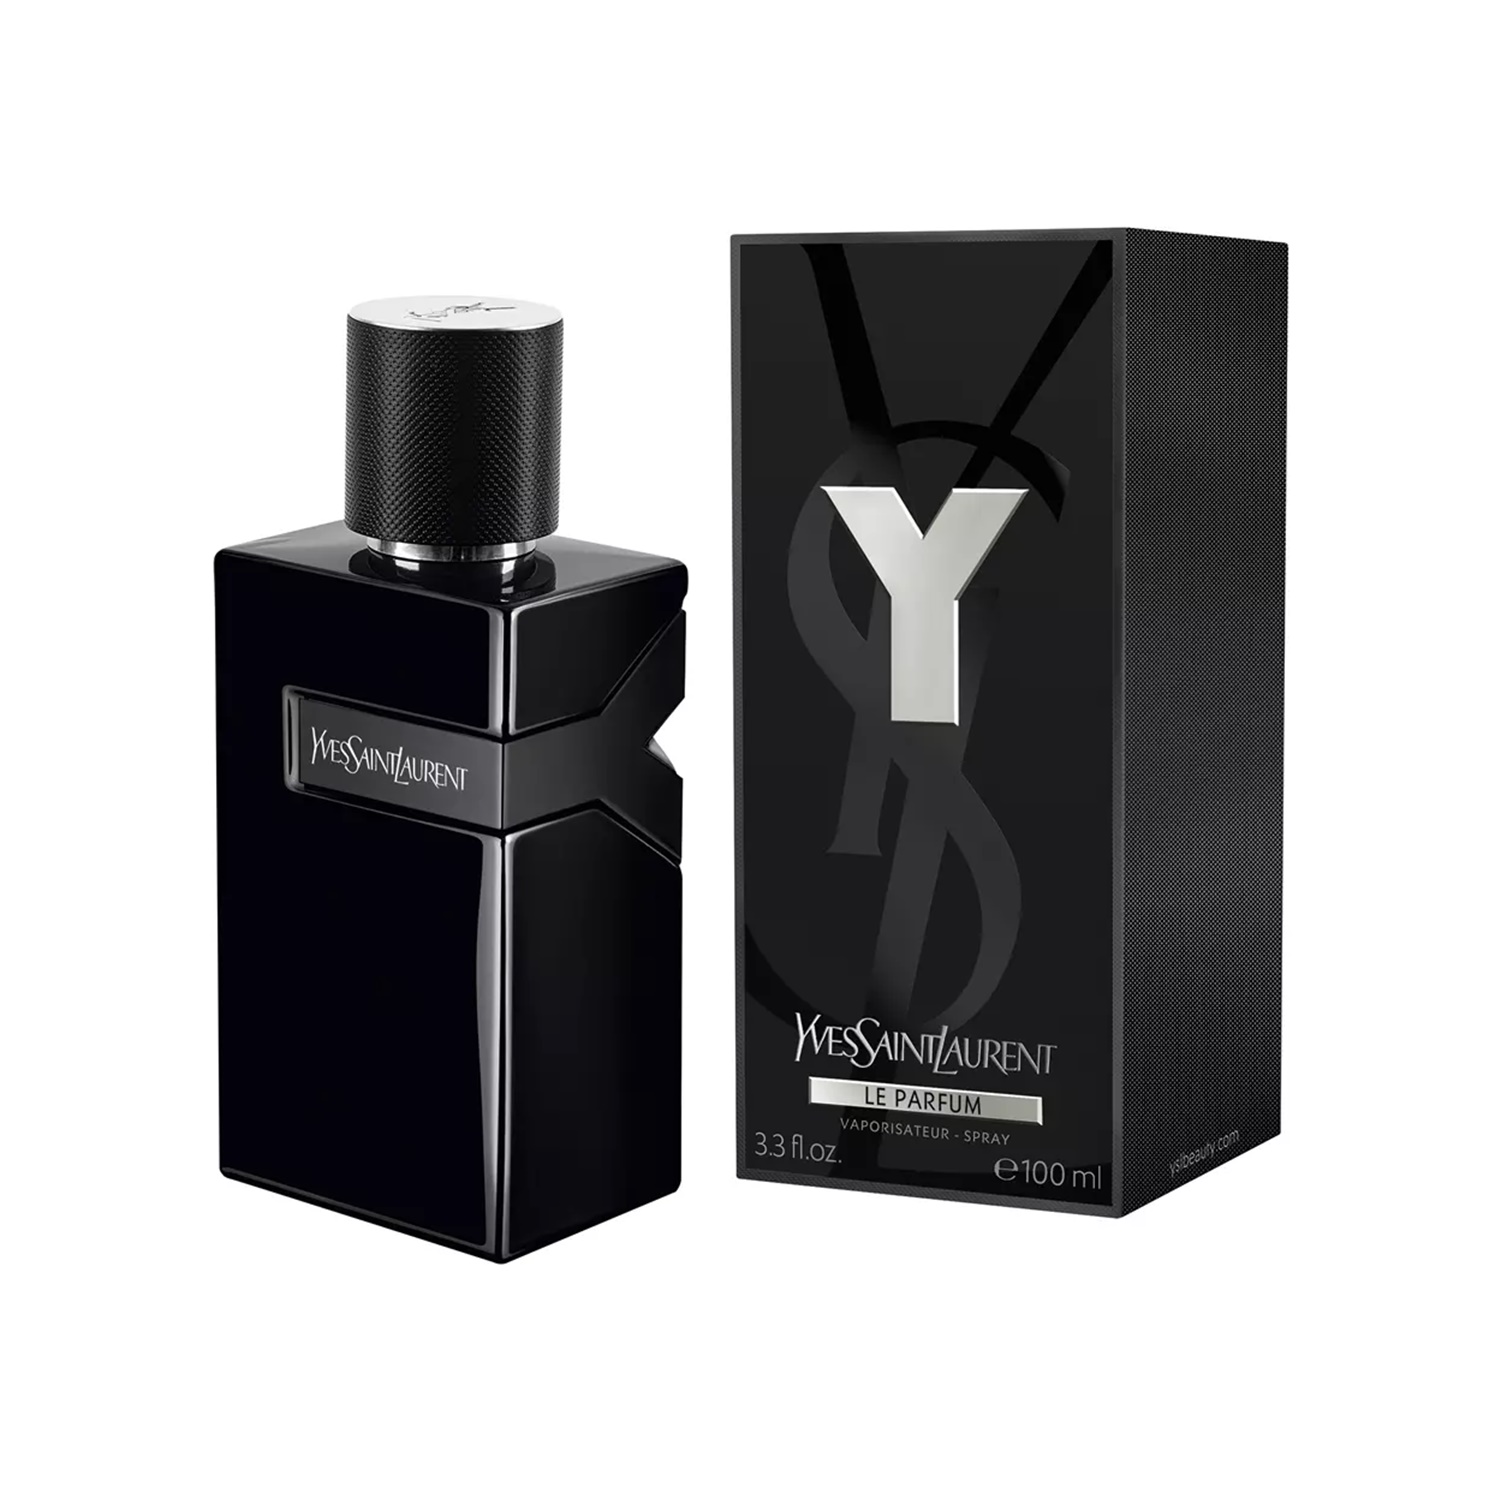 YSL Y Le Parfum EDP Amber Fougere fragrance for men - Indo Fragrance ...